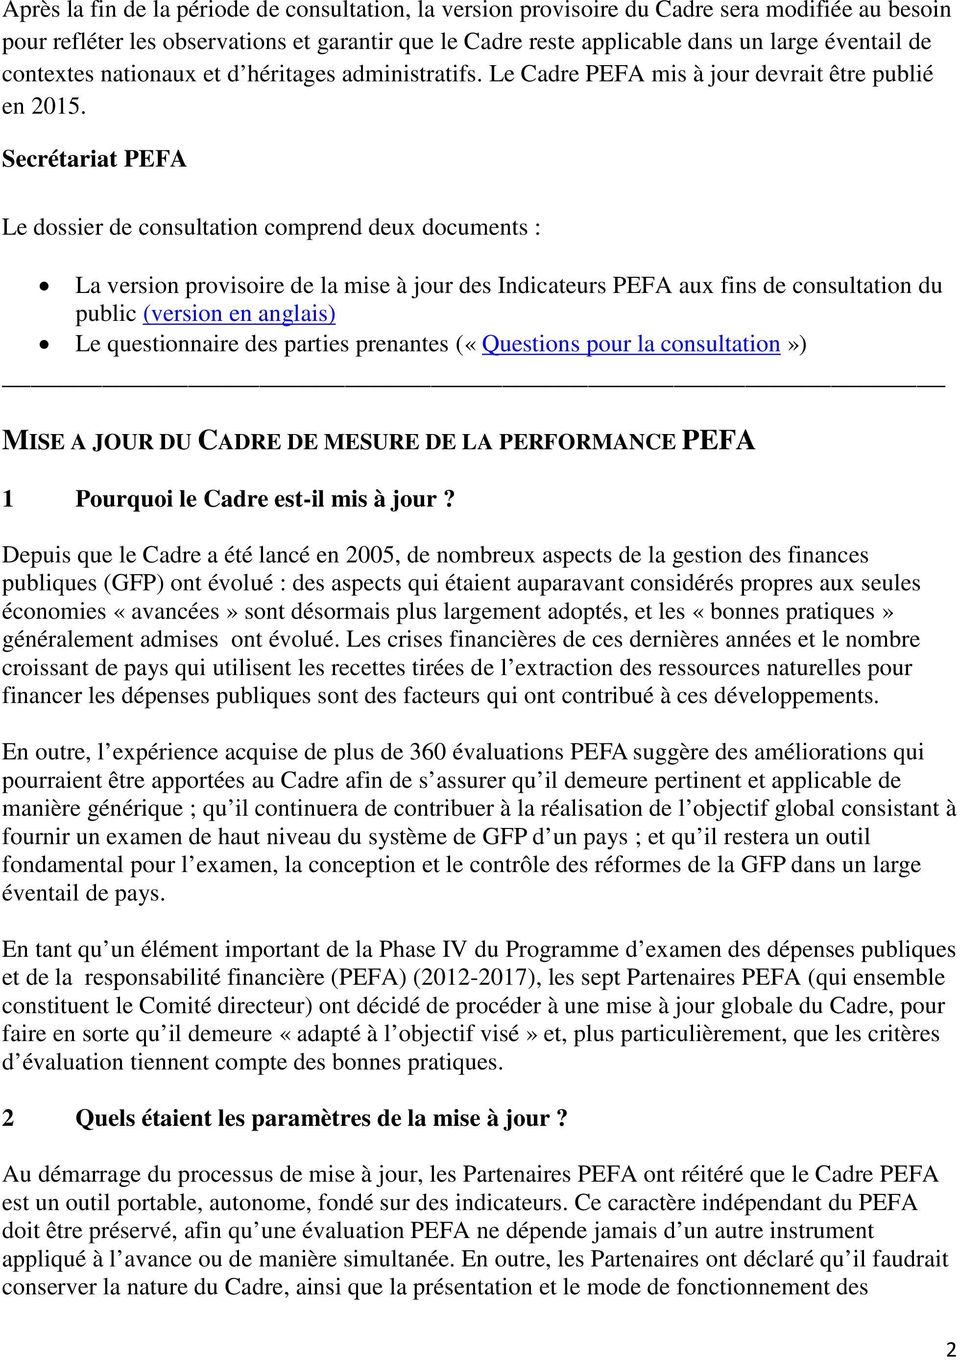 Secrétariat PEFA Le dossier de consultation comprend deux documents : La version provisoire de la mise à jour des Indicateurs PEFA aux fins de consultation du public (version en anglais) Le